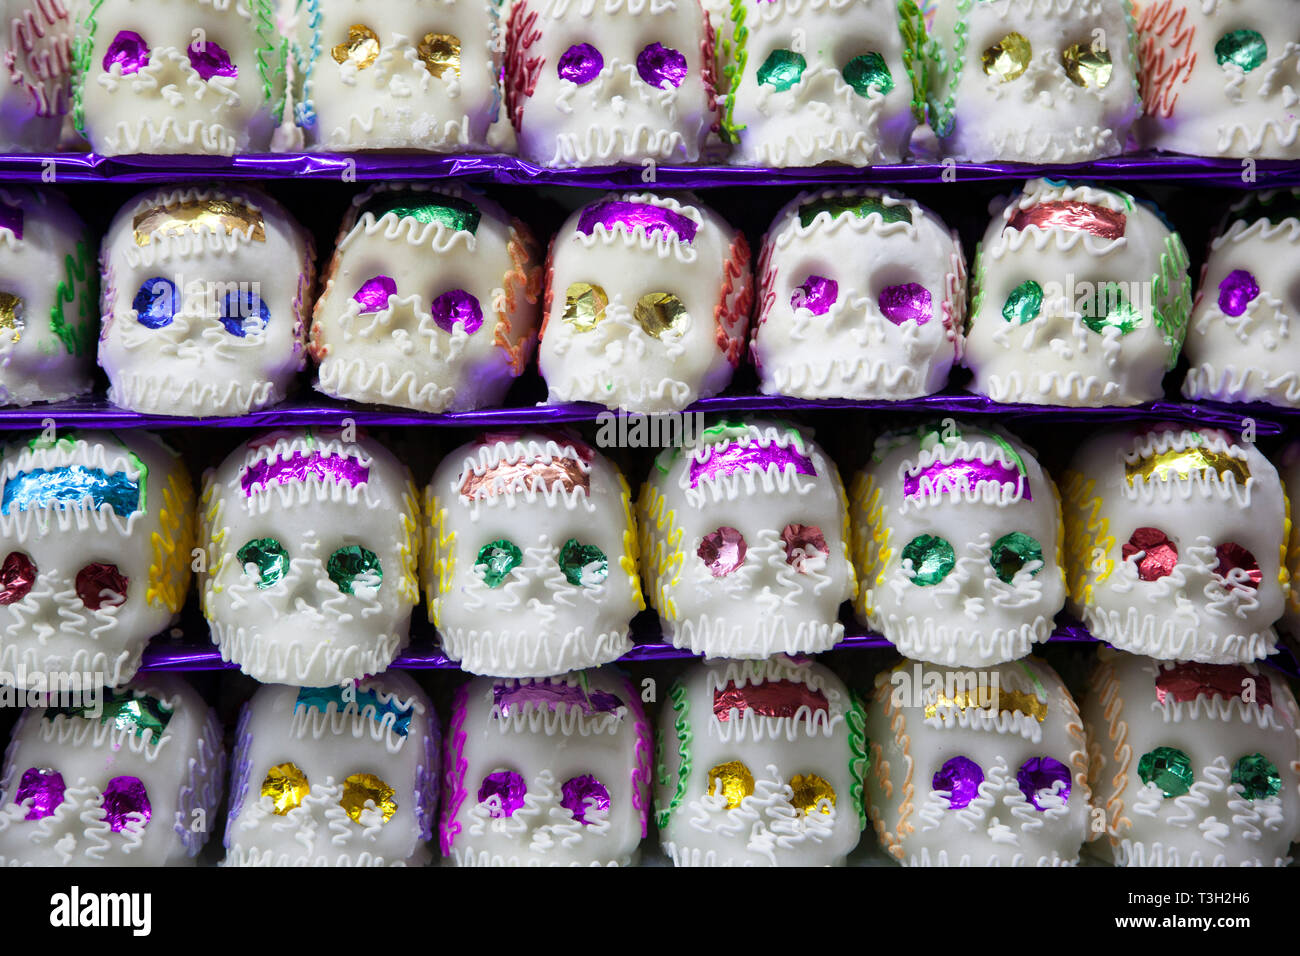 Una calavera, un cranio commestibile fatto di zucchero prodotto in tutto il Messico per celebrare il giorno dei morti, o dia de los Muertos. Foto Stock